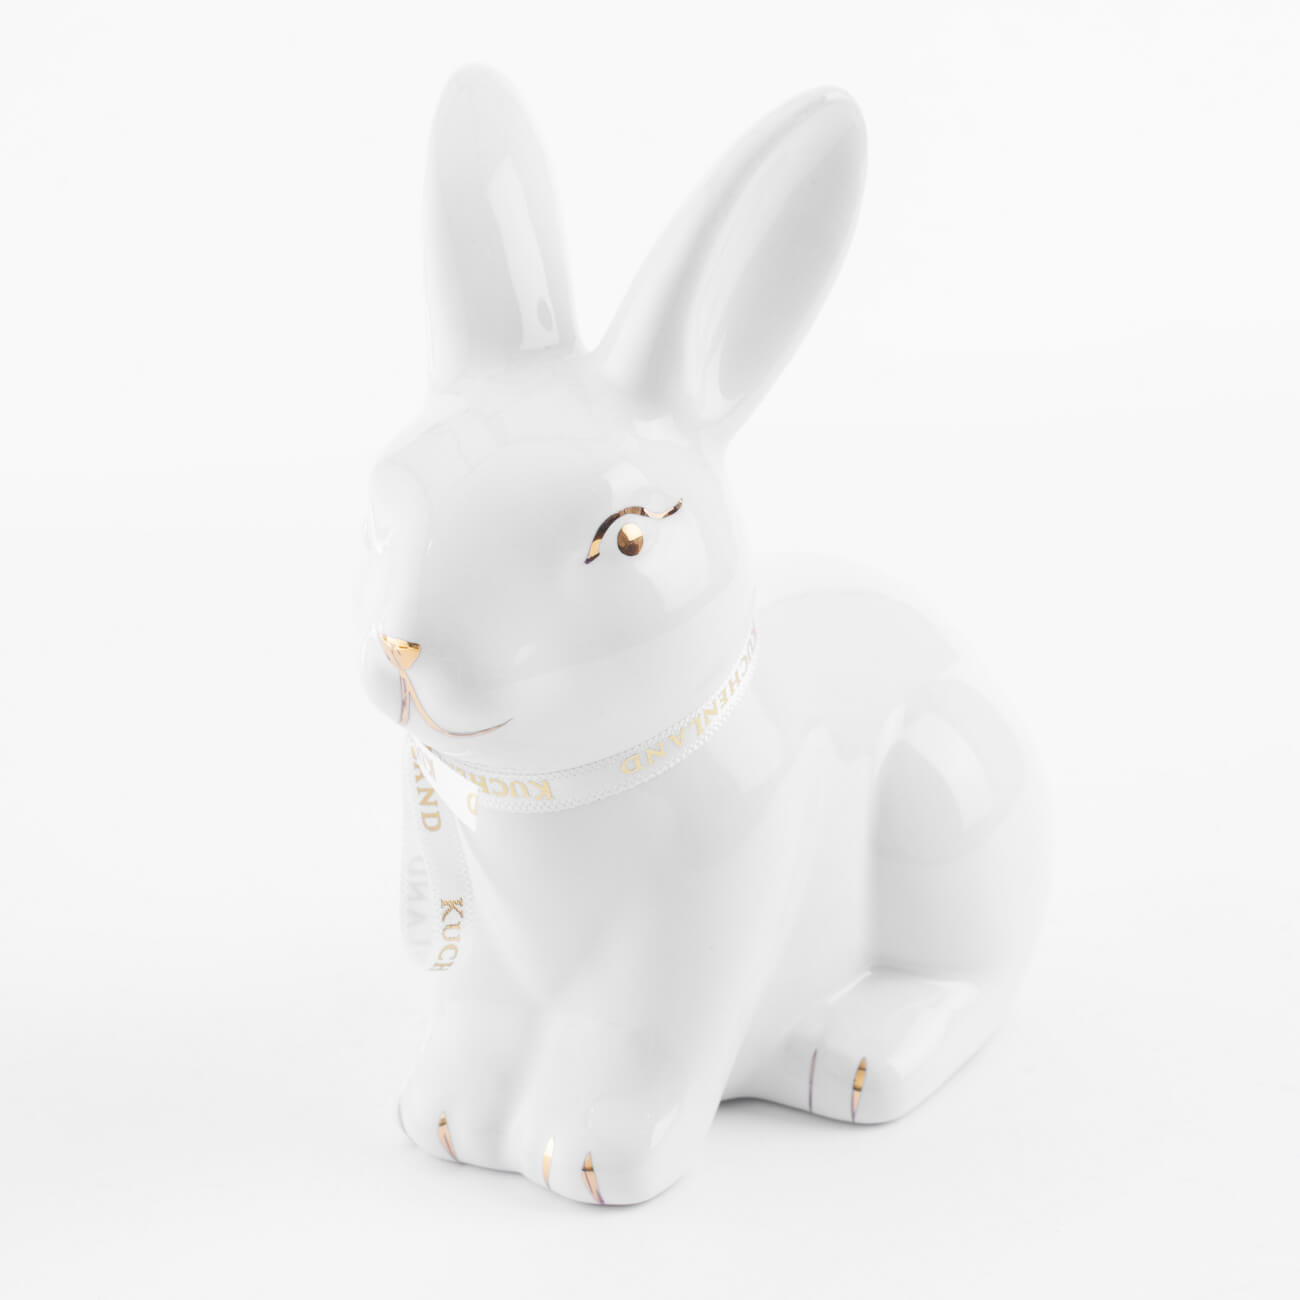 Статуэтка, 13 см, керамика, бело-золотистая, Кролик сидит, Easter gold изображение № 1